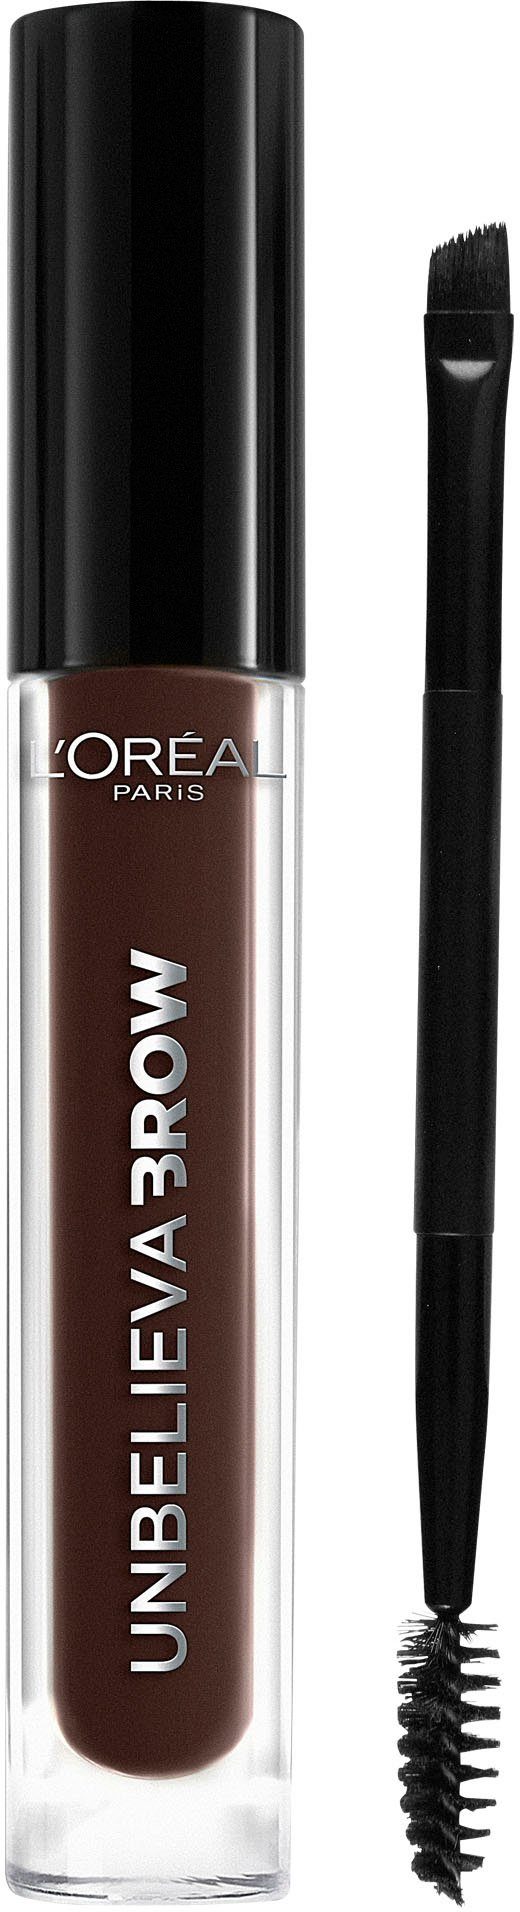 L'ORÉAL PARIS Augenbrauen-Gel Applikatoren, wischfest, Ebony 109 Brow, Unbelieva Augen-Make-Up unterschiedlichen mit